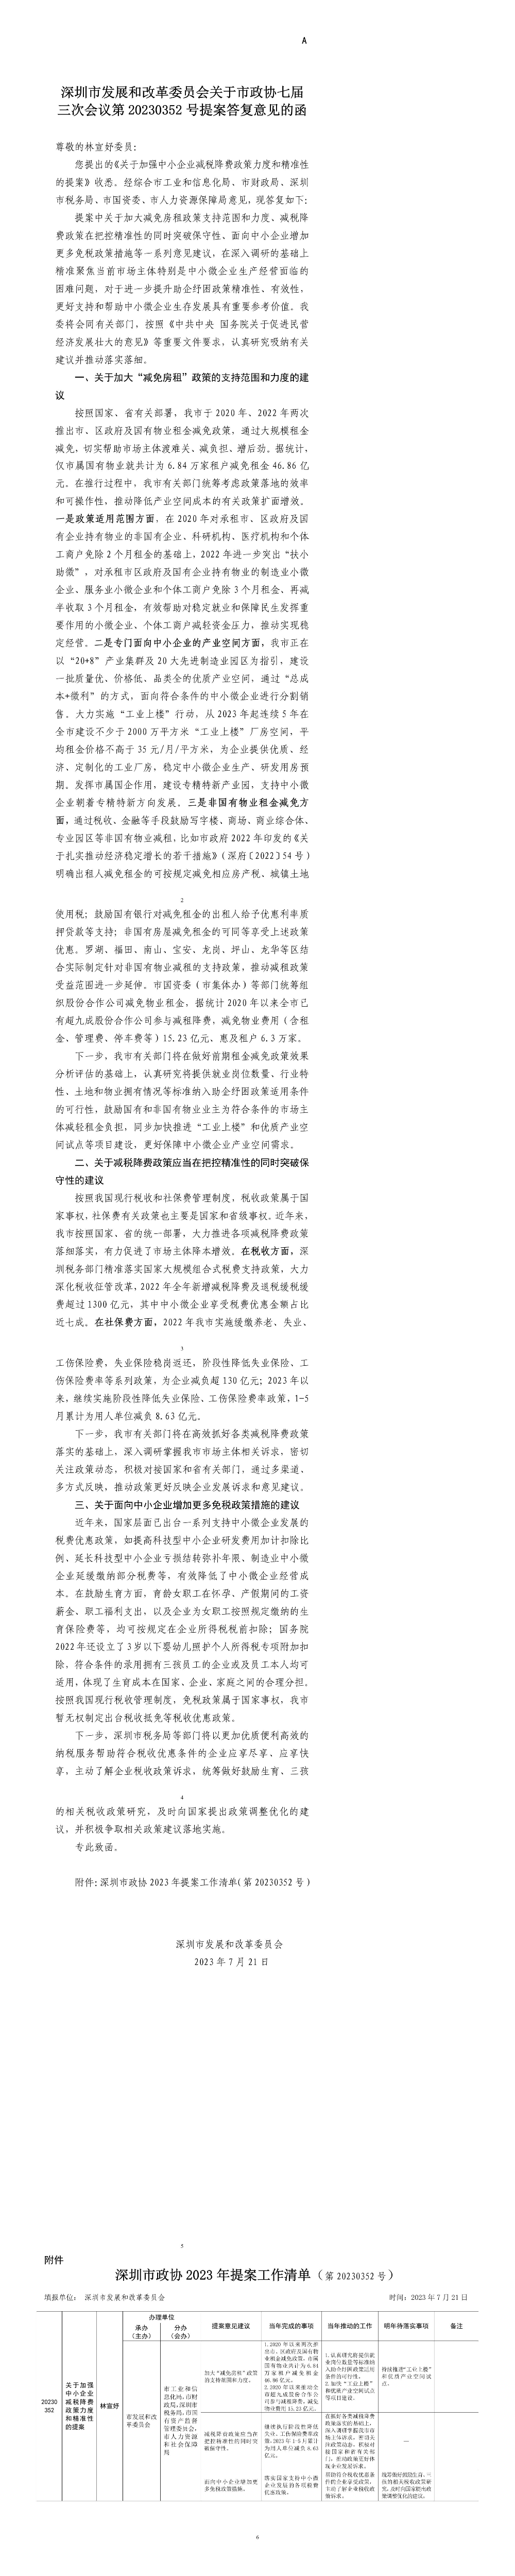 深圳市发展和改革委员会关于市政协七届三次会议第20230352号提案答复意见的函.jpg